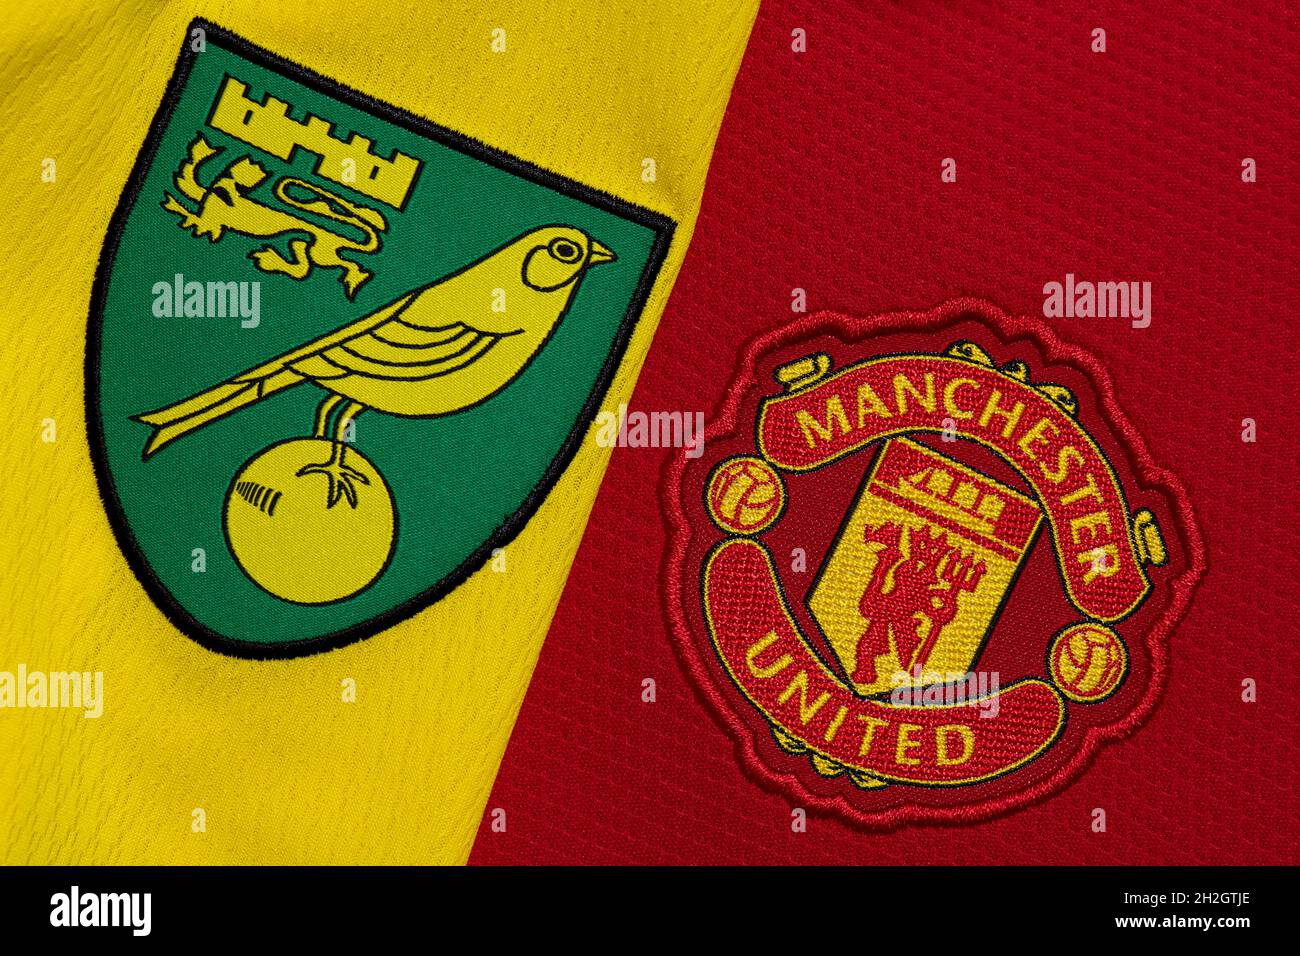 Nahaufnahme des Vereinswappens von man United und Norwich City. Stockfoto